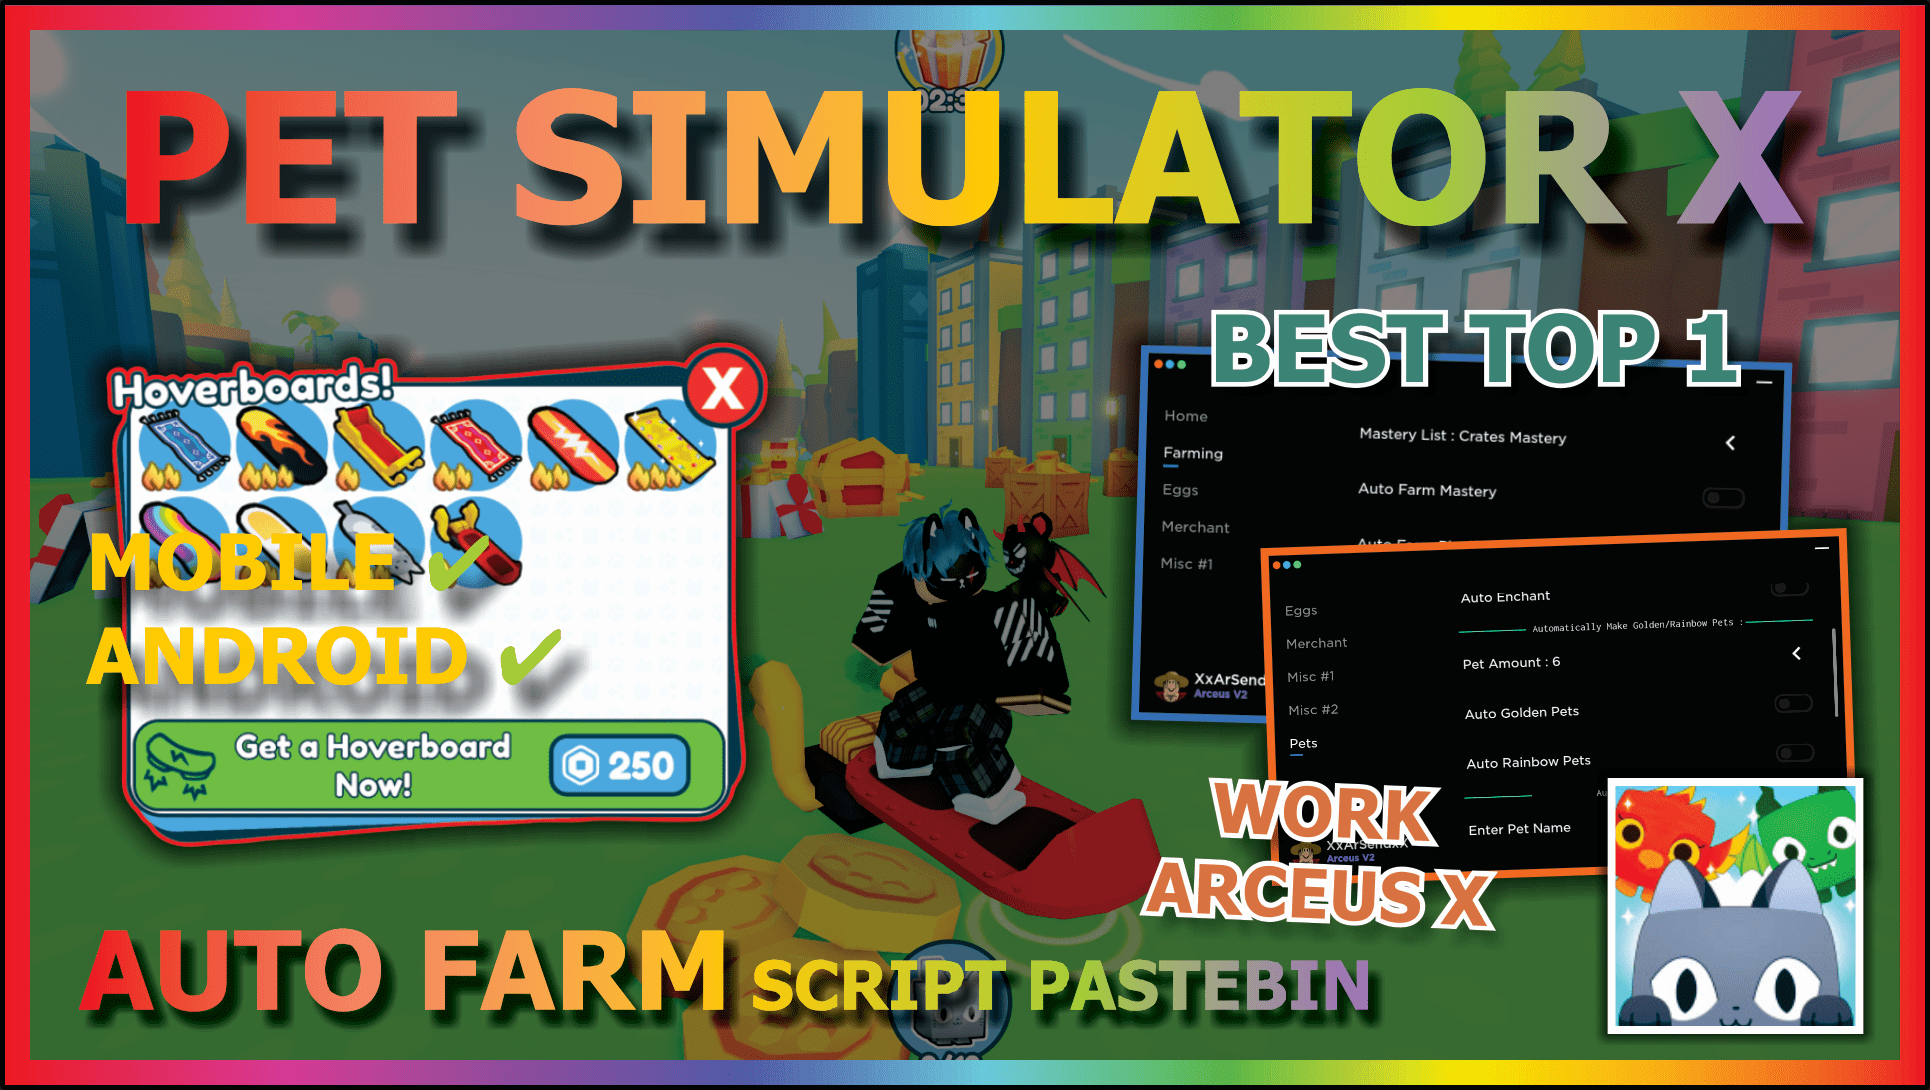 Pet Simulator X Script - Arceus X